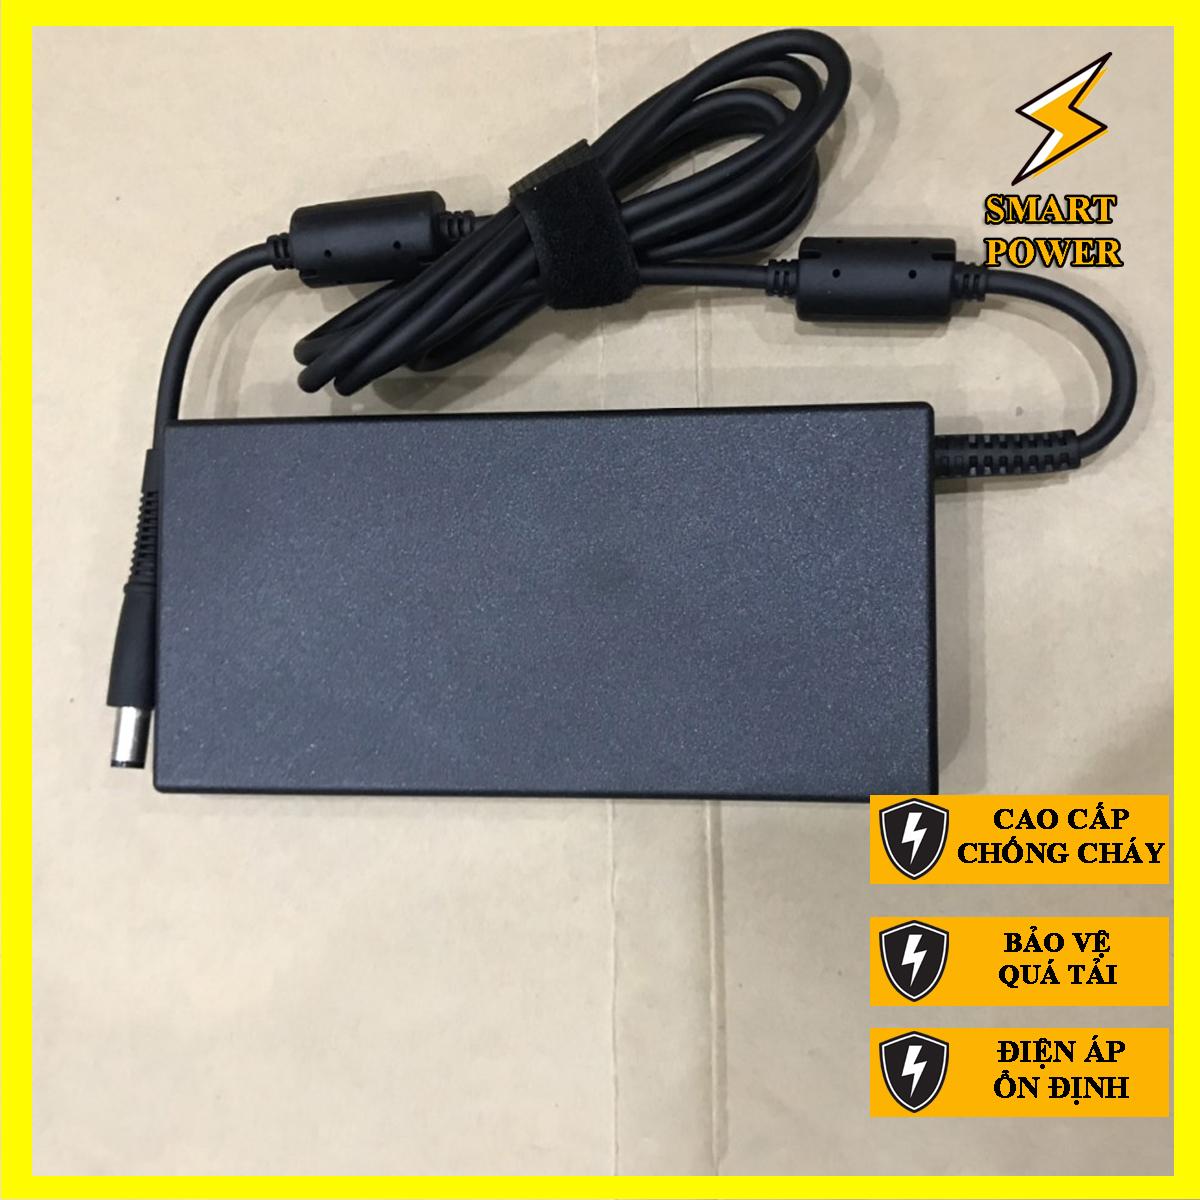 Sạc dành cho laptop HP 19V - 7.89A - 150W Chân Kim To - Sạc Zin - Hàng Chính Hãng